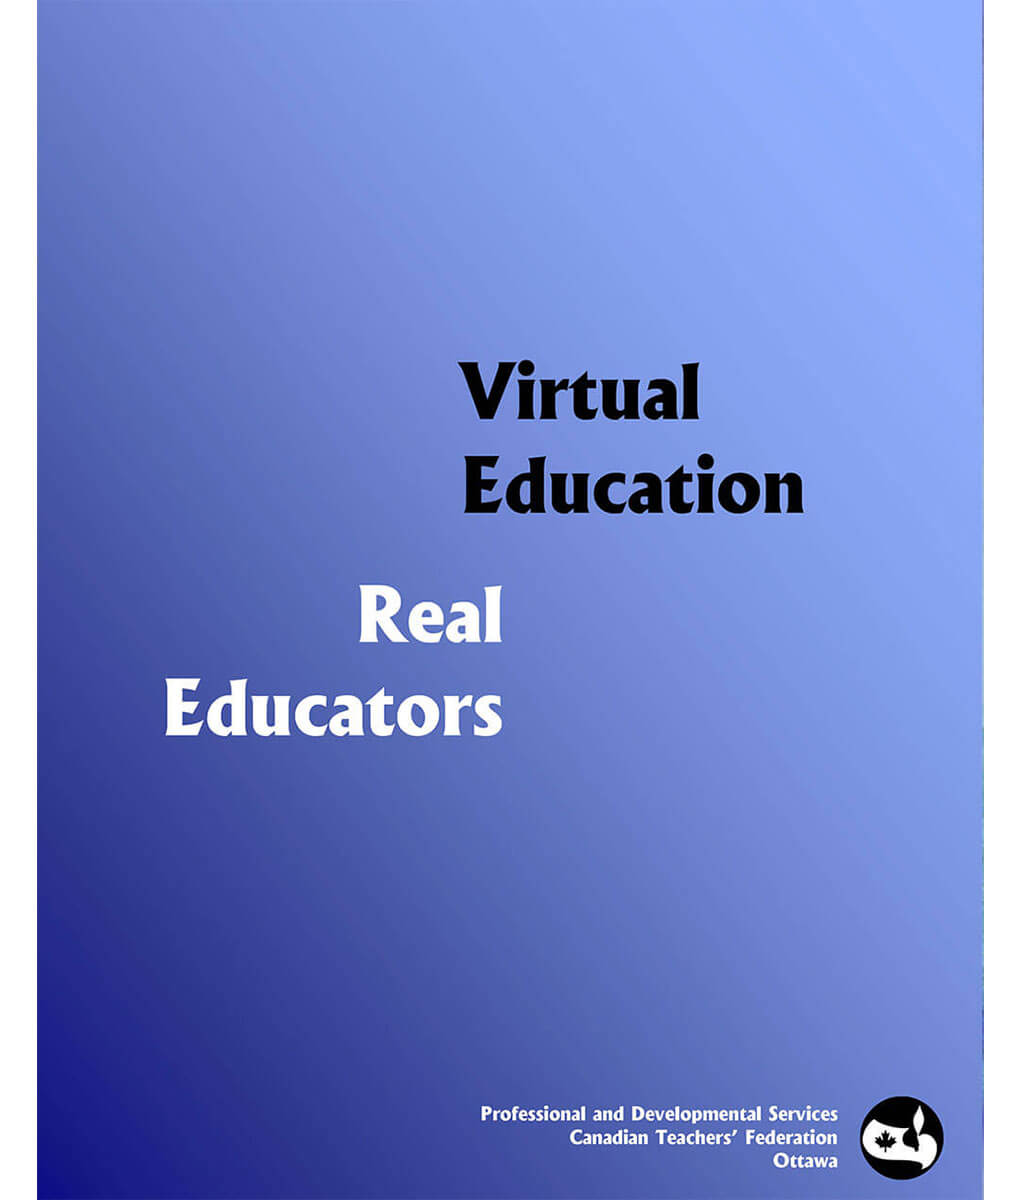 Virtual Education, Real Educators